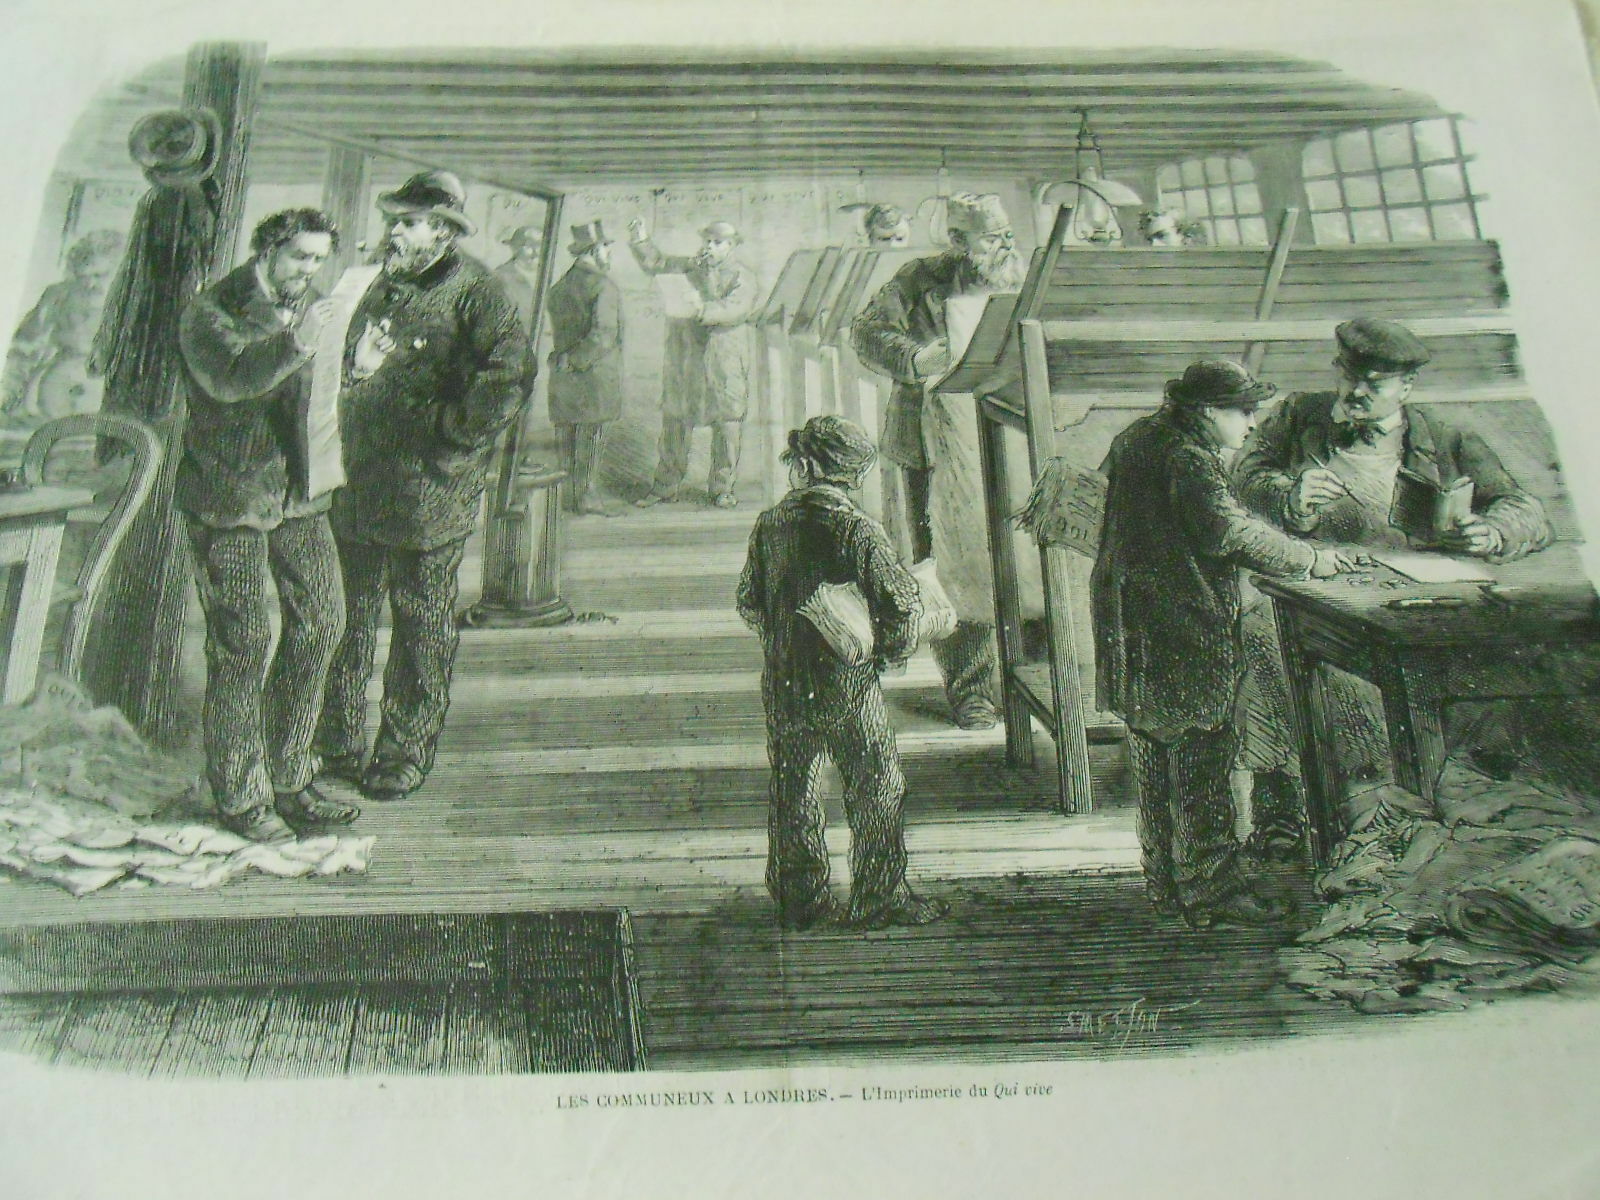 Gravure de 1871 : Les communeux à Londres. - L'imprimerie du "Qui vive", fondé par Vermersch